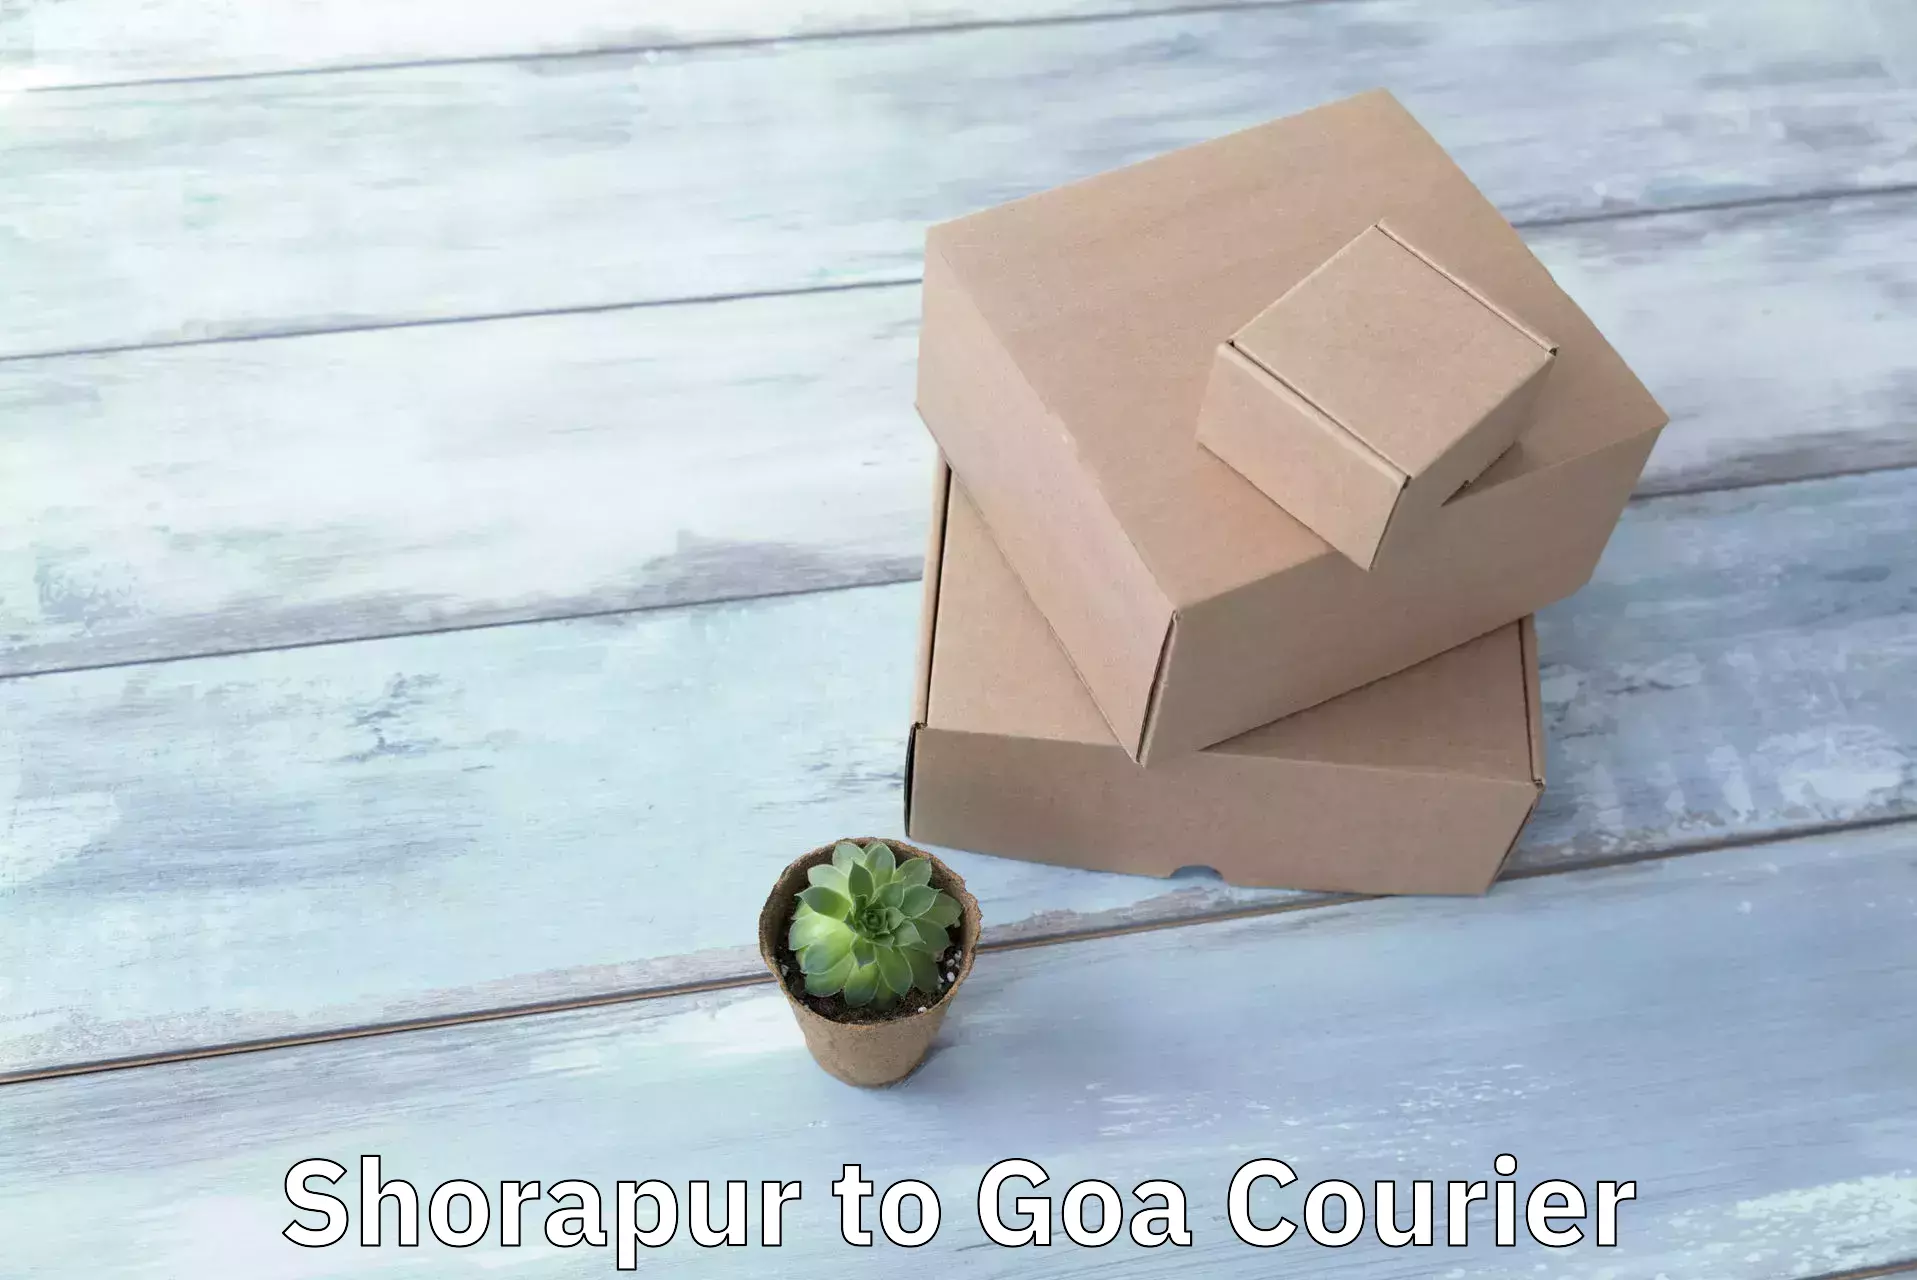 Ground shipping Shorapur to Goa University